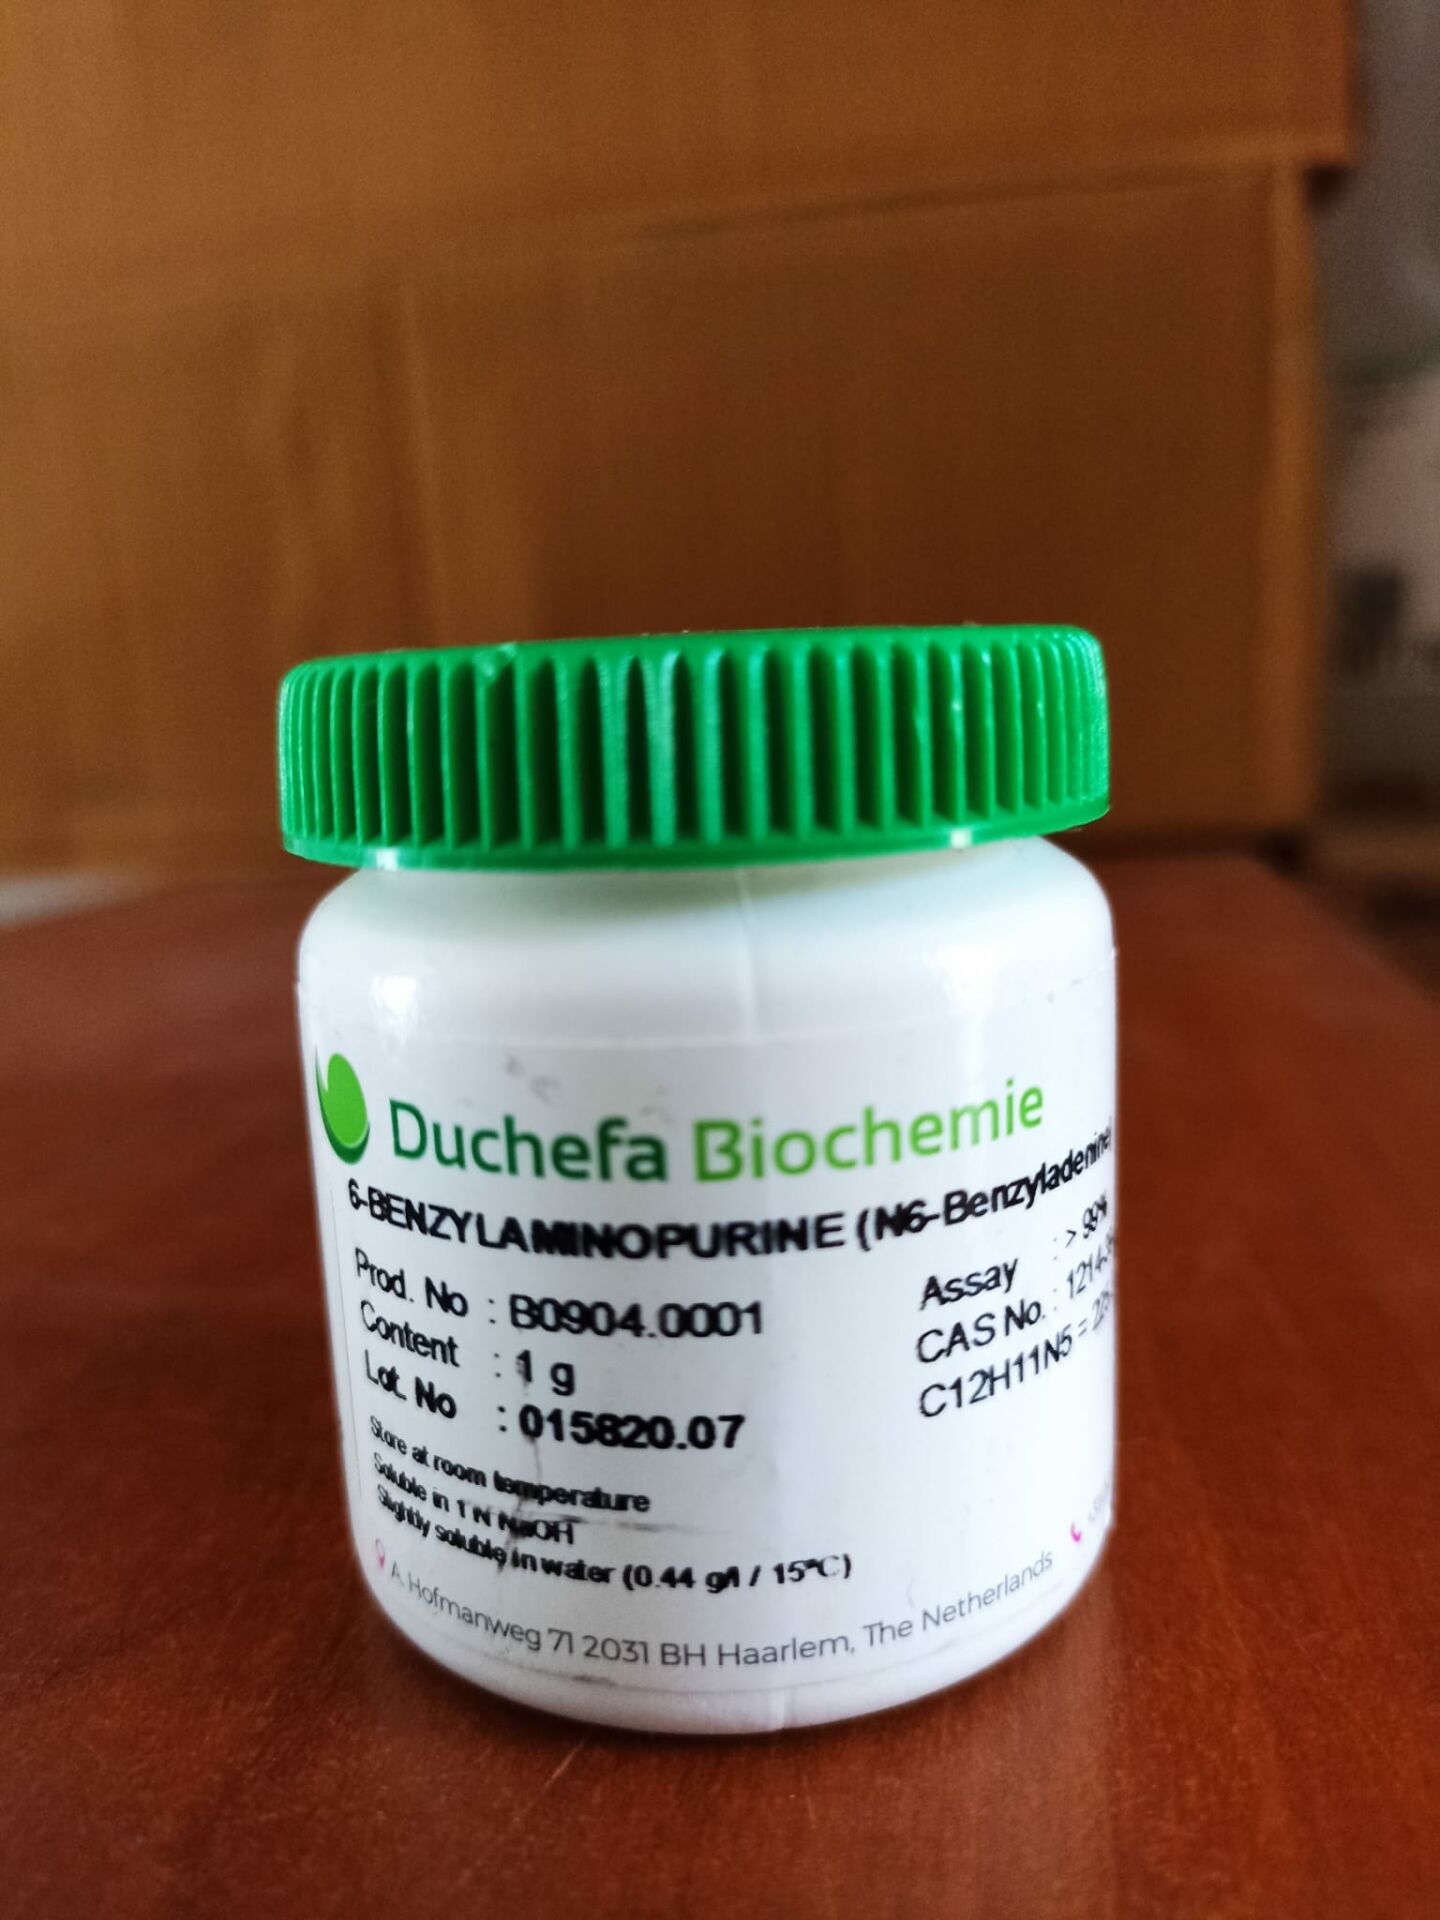 Duchefa 6-Benzilaminopurin (6-BAP) 6-BENZYLAMINOPURINE